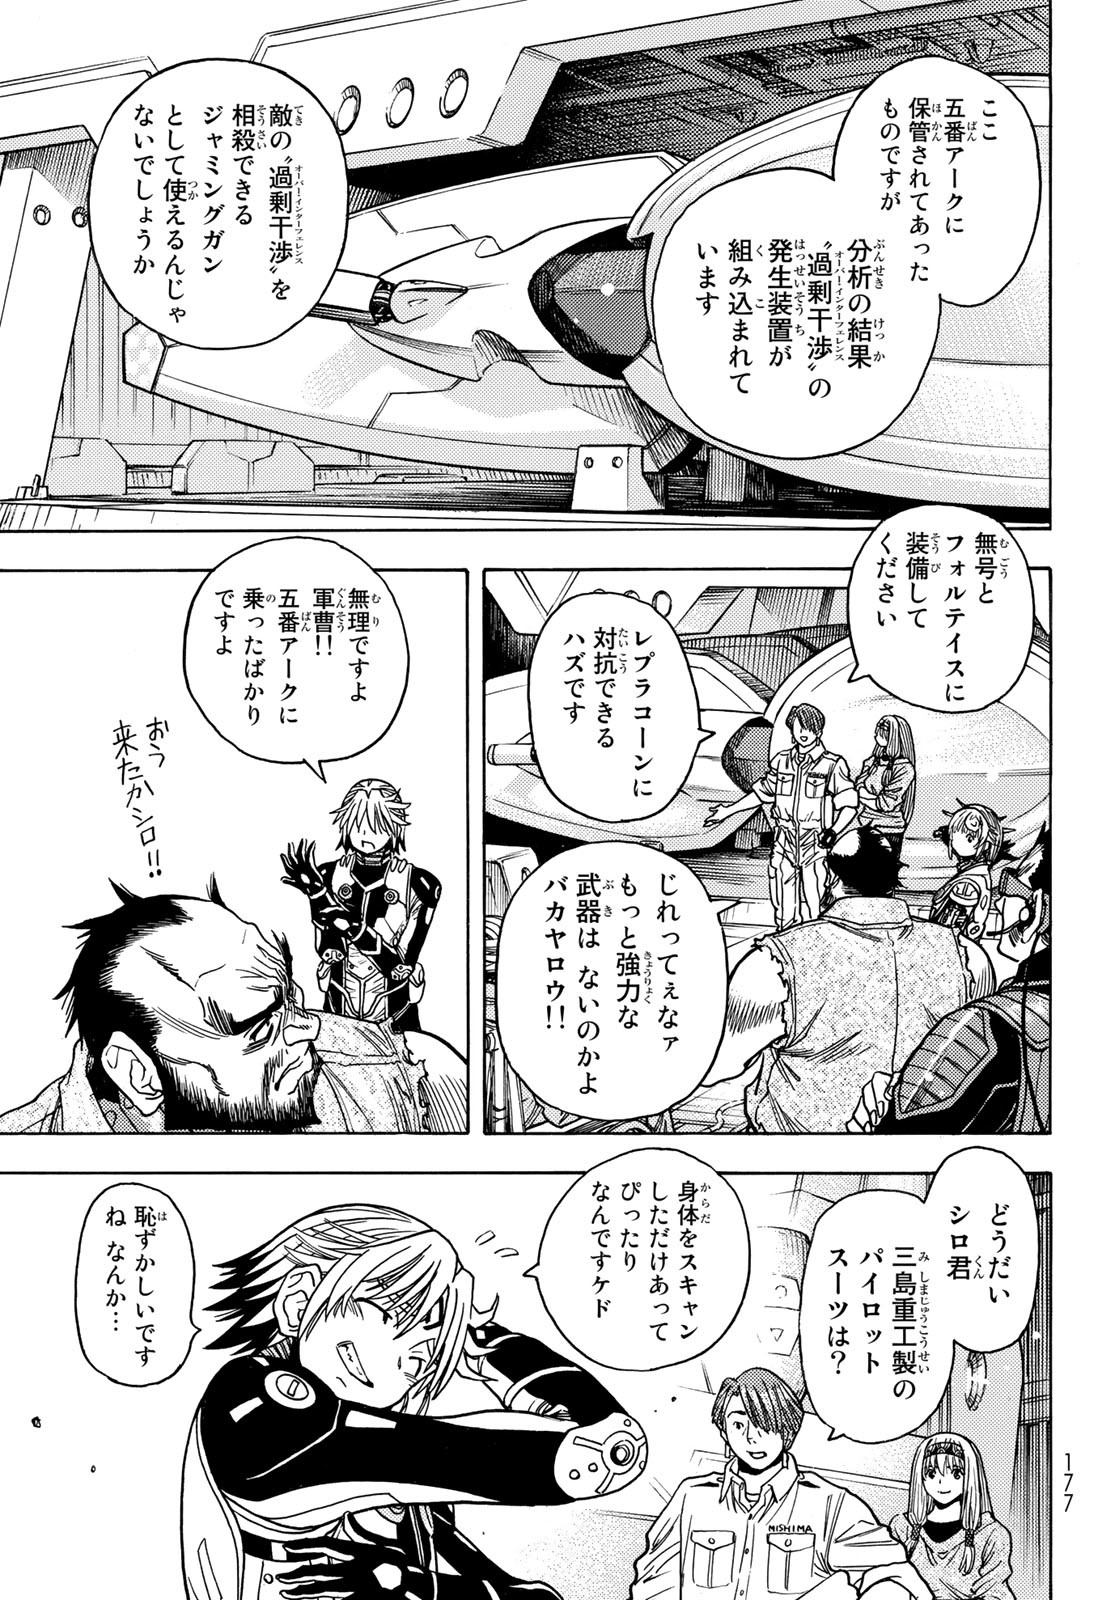 Mugou no Schnell Gear: Chikyuugai Kisouka AI - Chapter 44 - Page 11